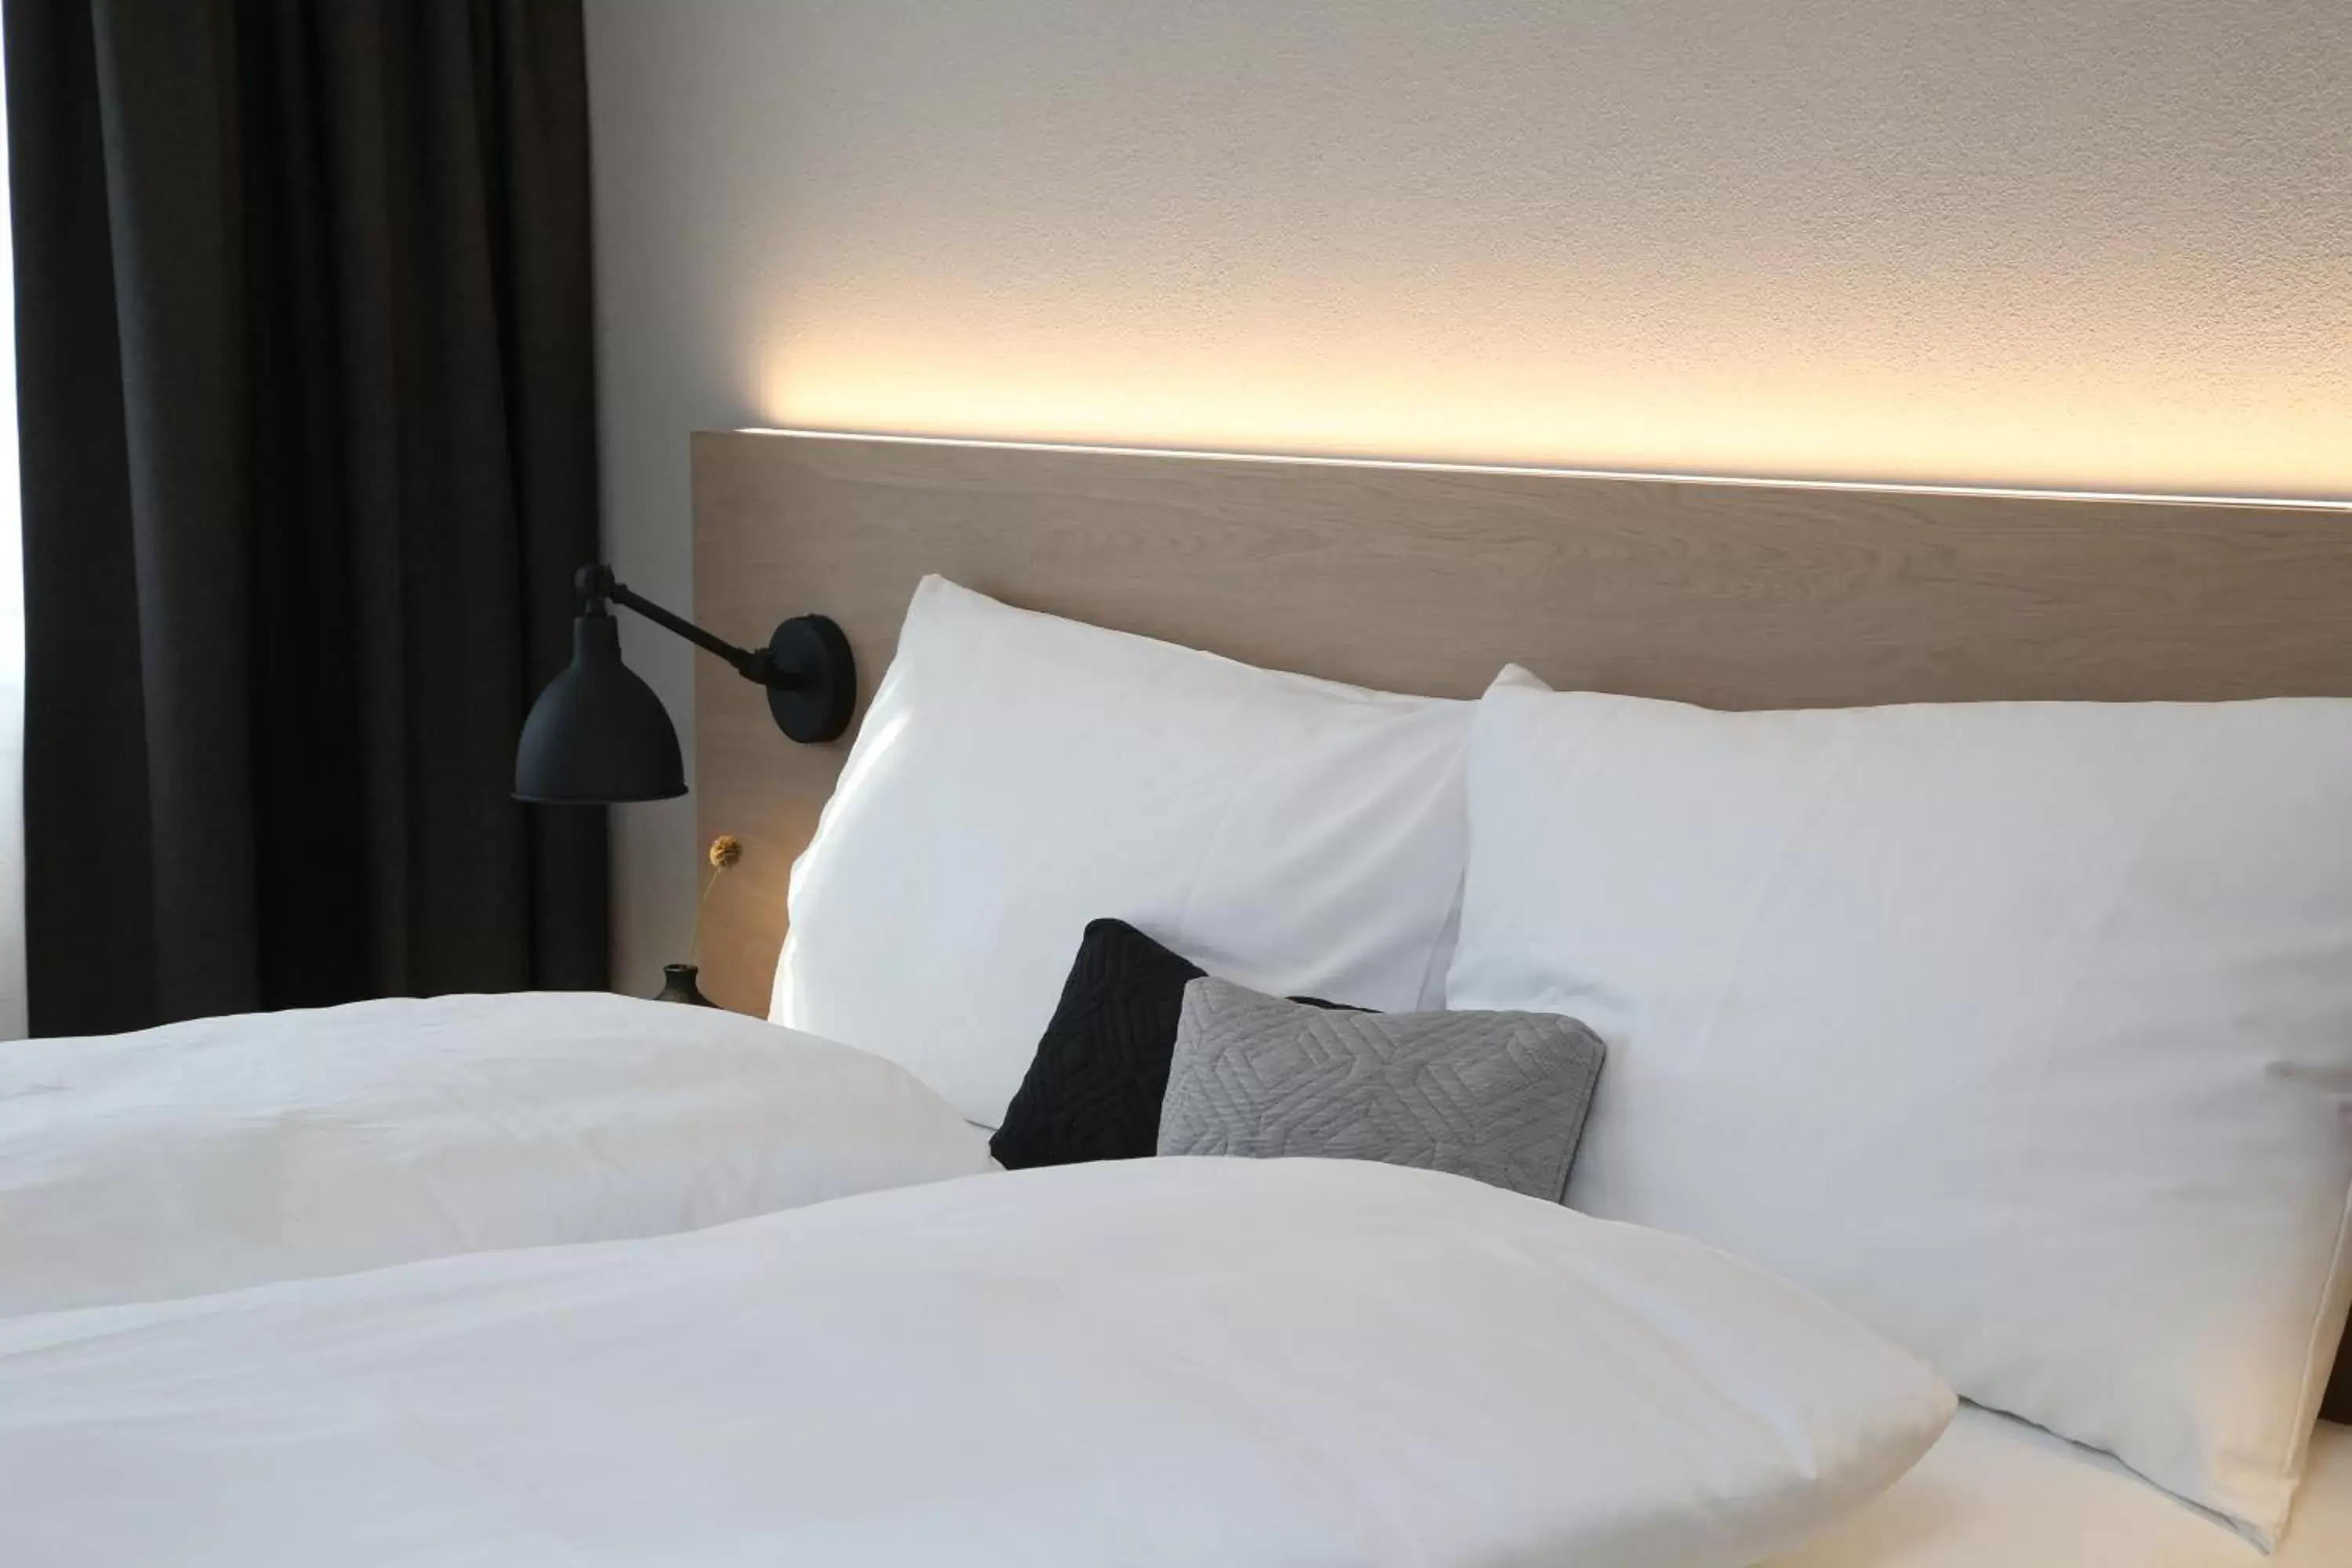 Decorative detail, Bed in Forum - das Business & Lifestylehotel